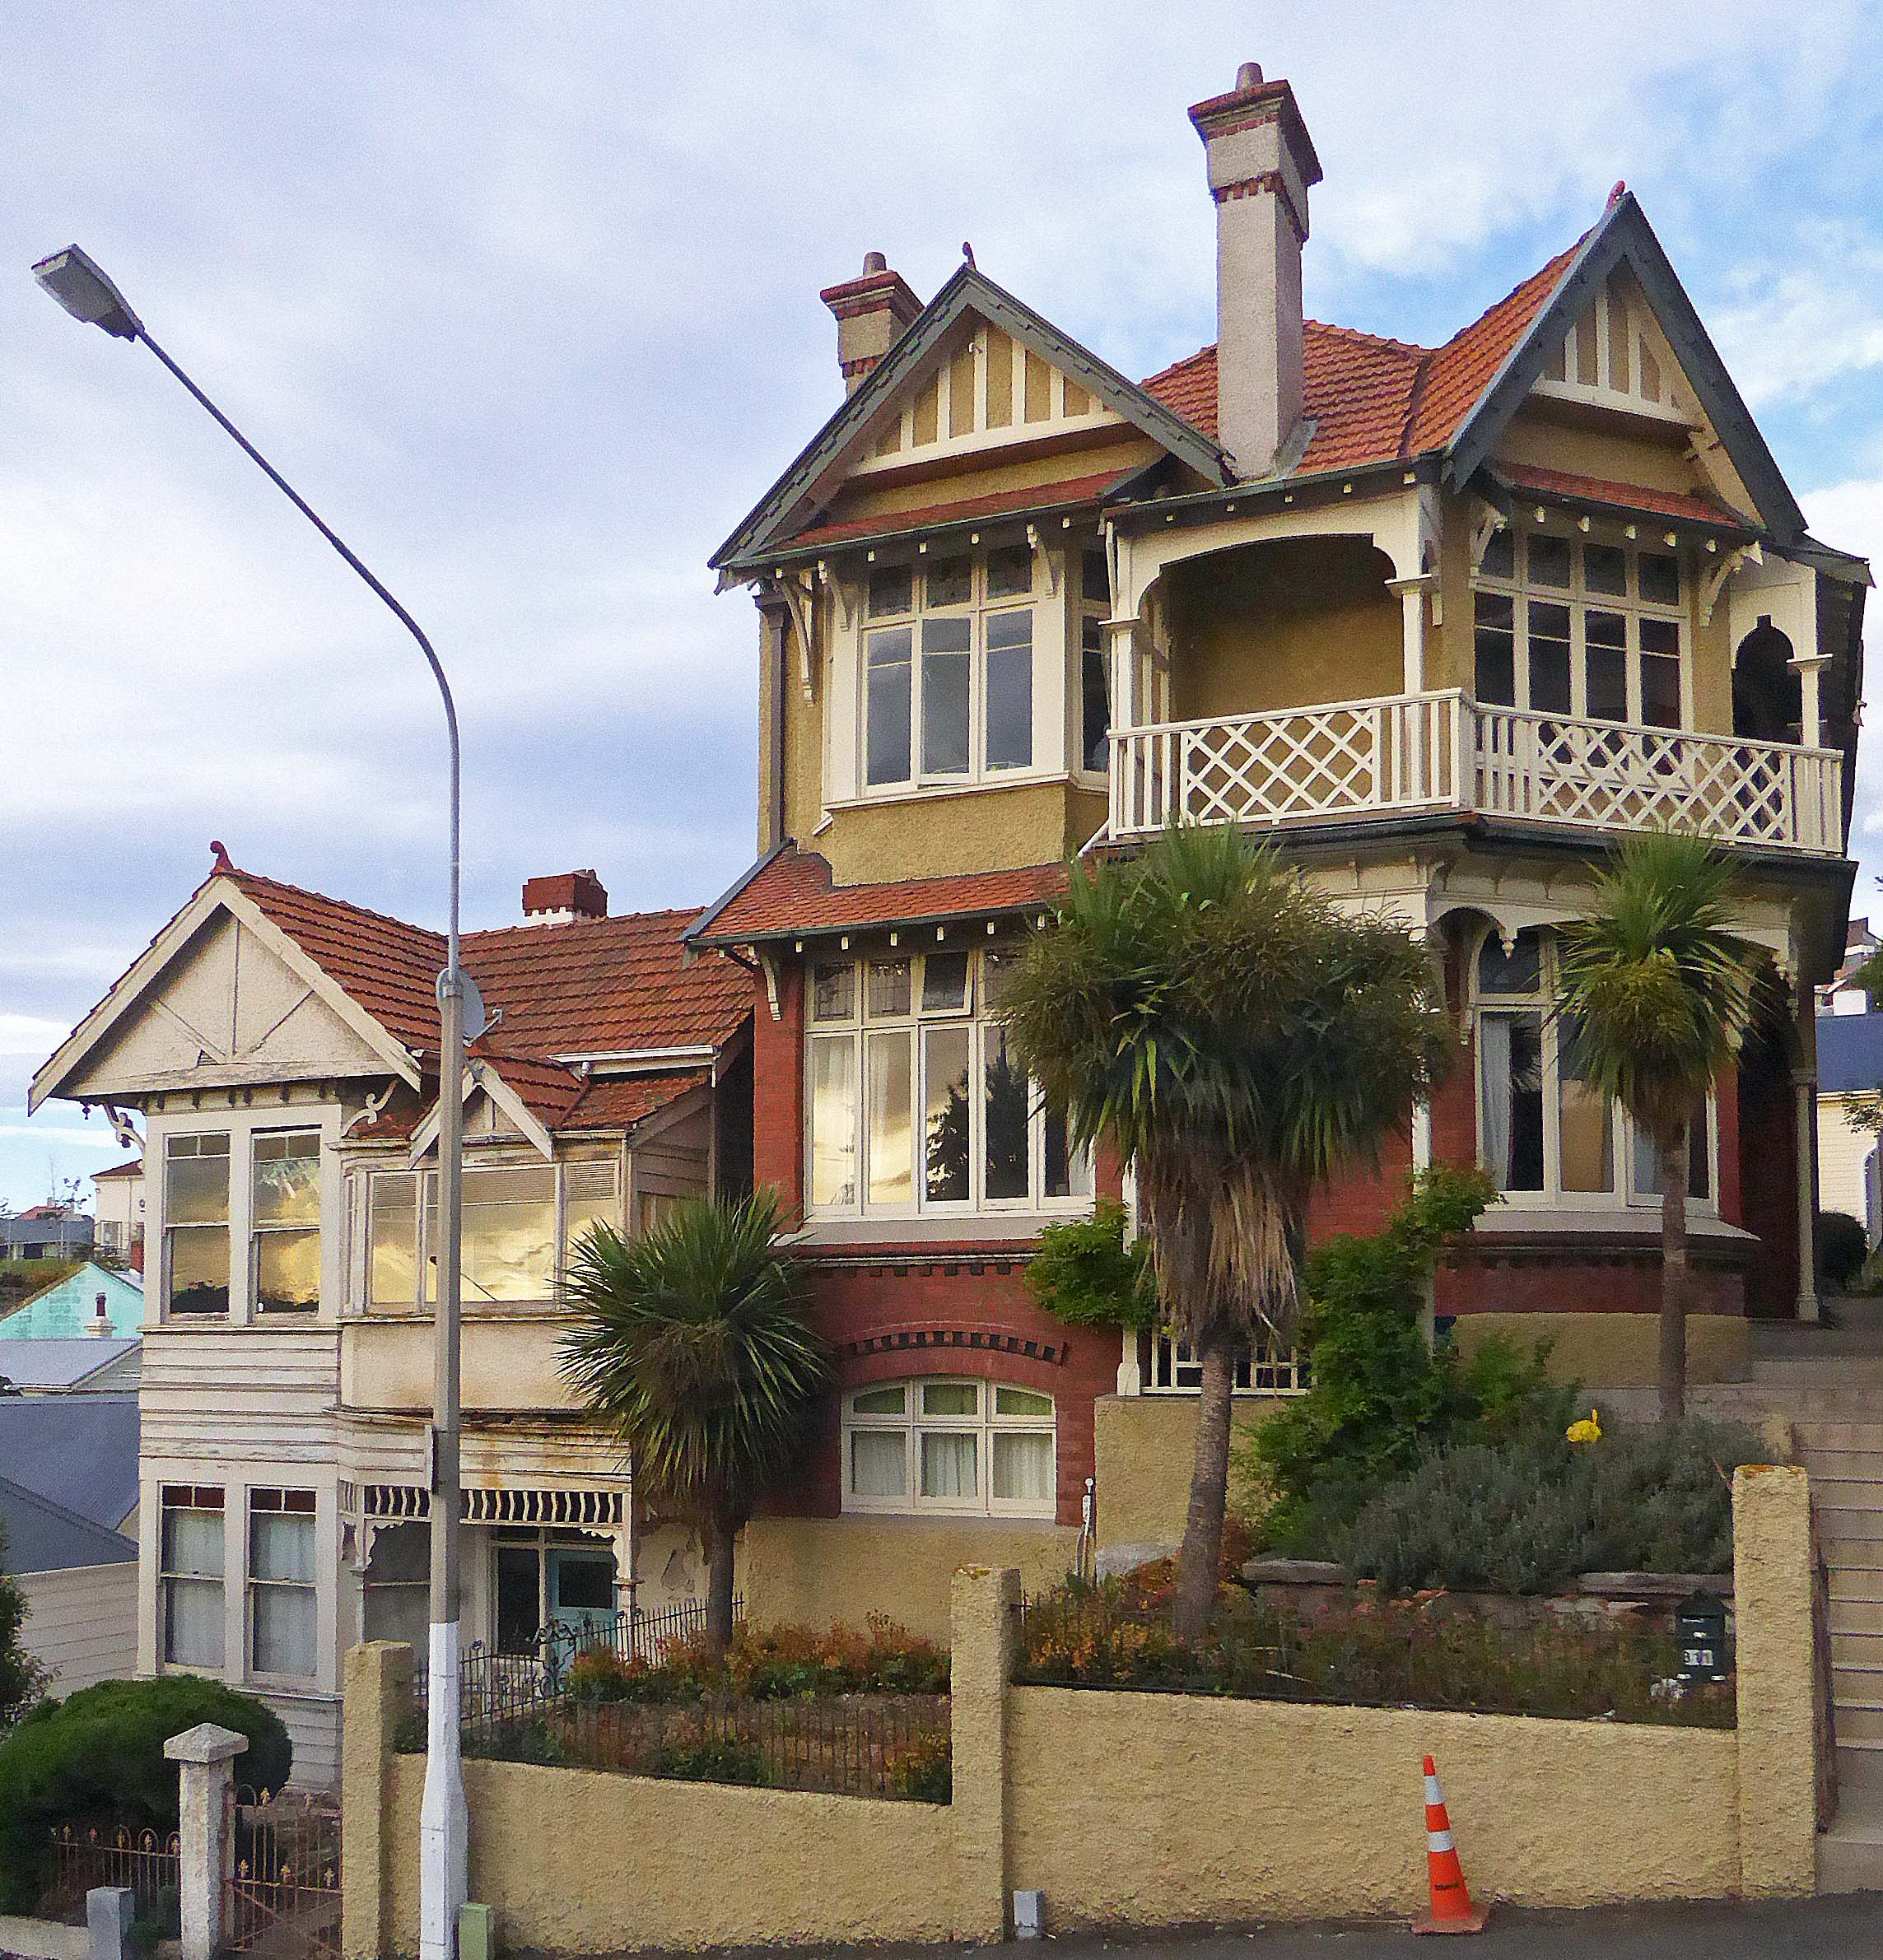 Victorian Home in Dunedin, NZ